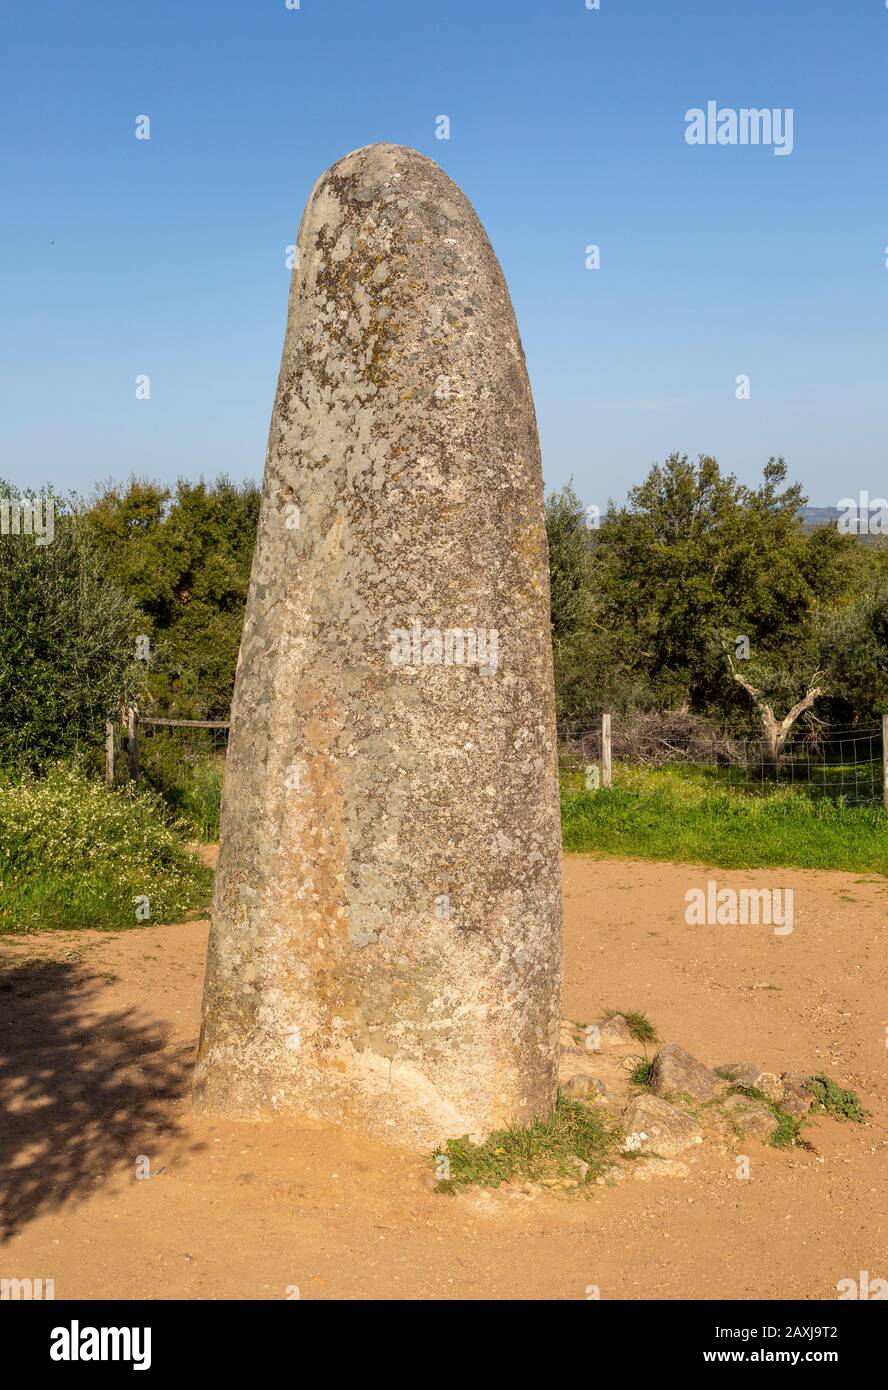 Piedra neolítica de pie de 4 metros de altura llamada el Menir dos Almendres, cerca de Évora, Alentejo, Portugal, Sur de Europa Foto de stock